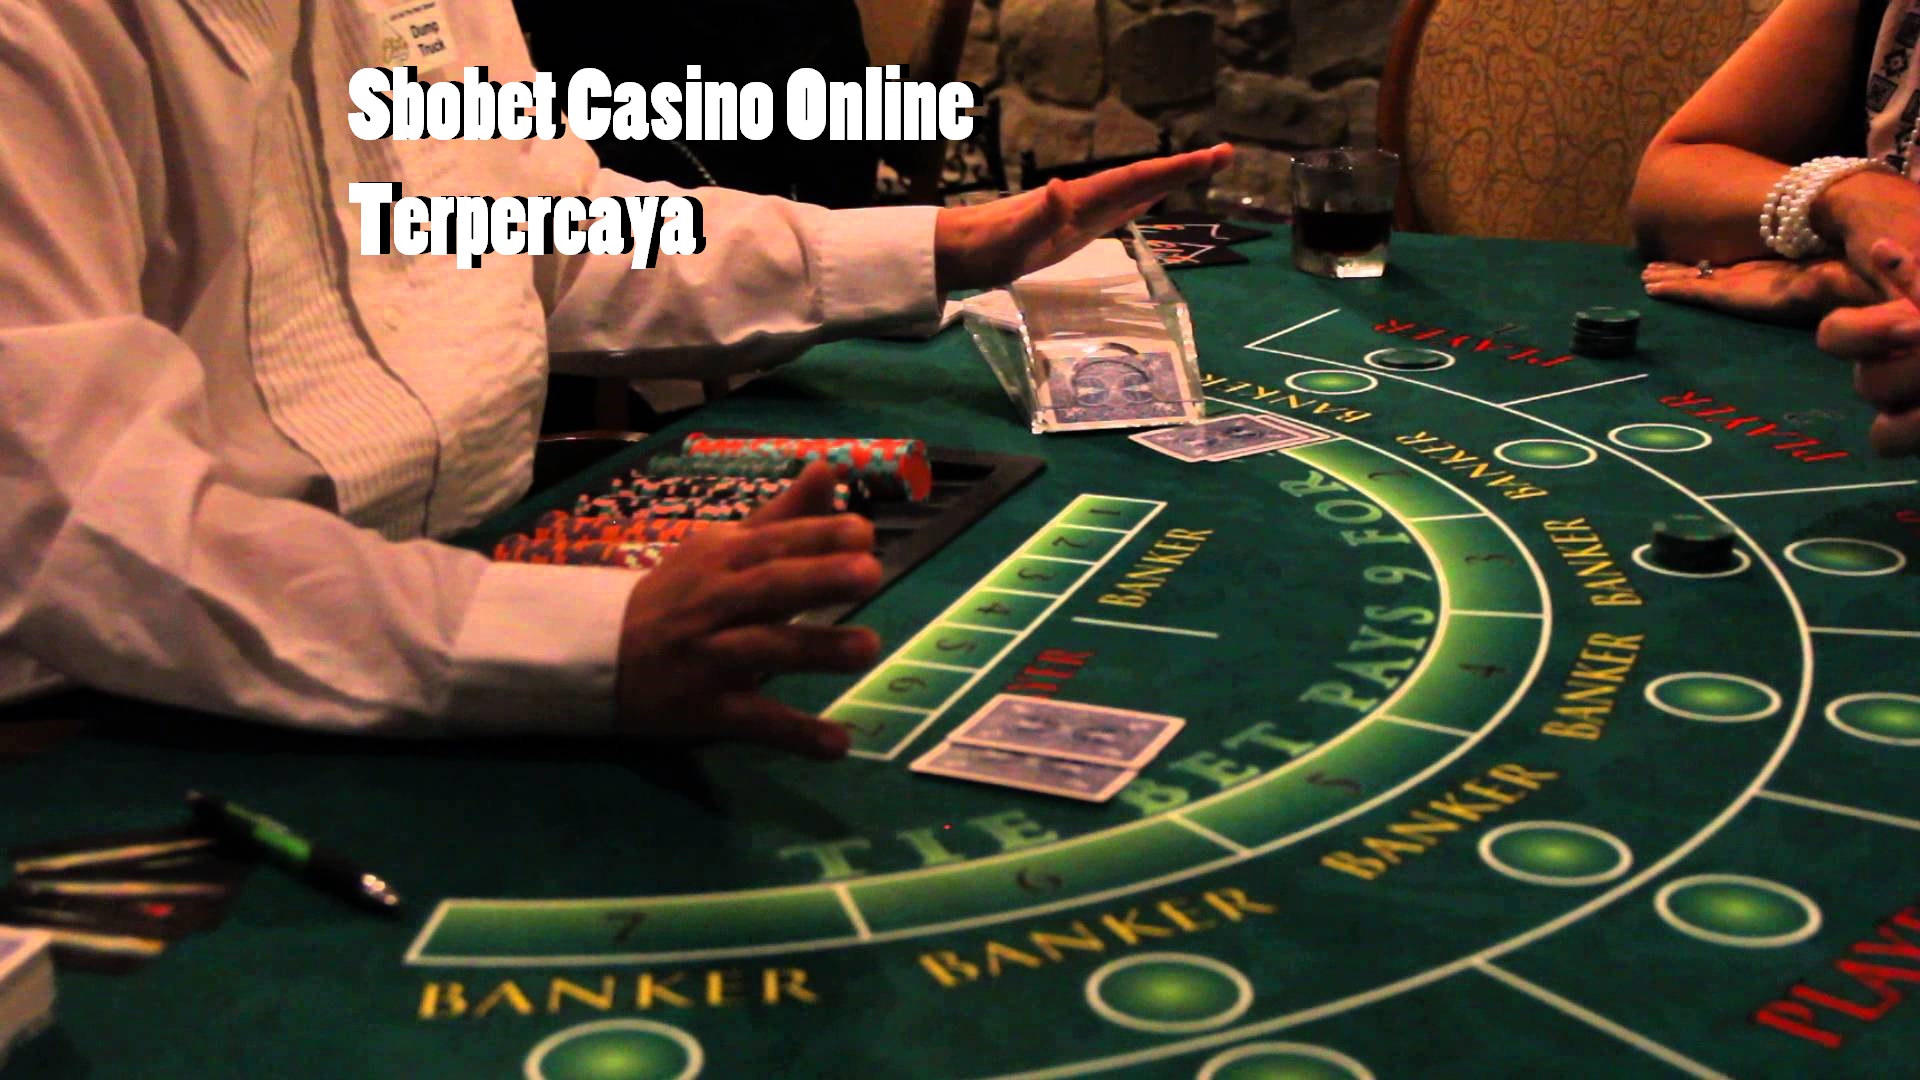 Sbobet Casino Online Terpercaya